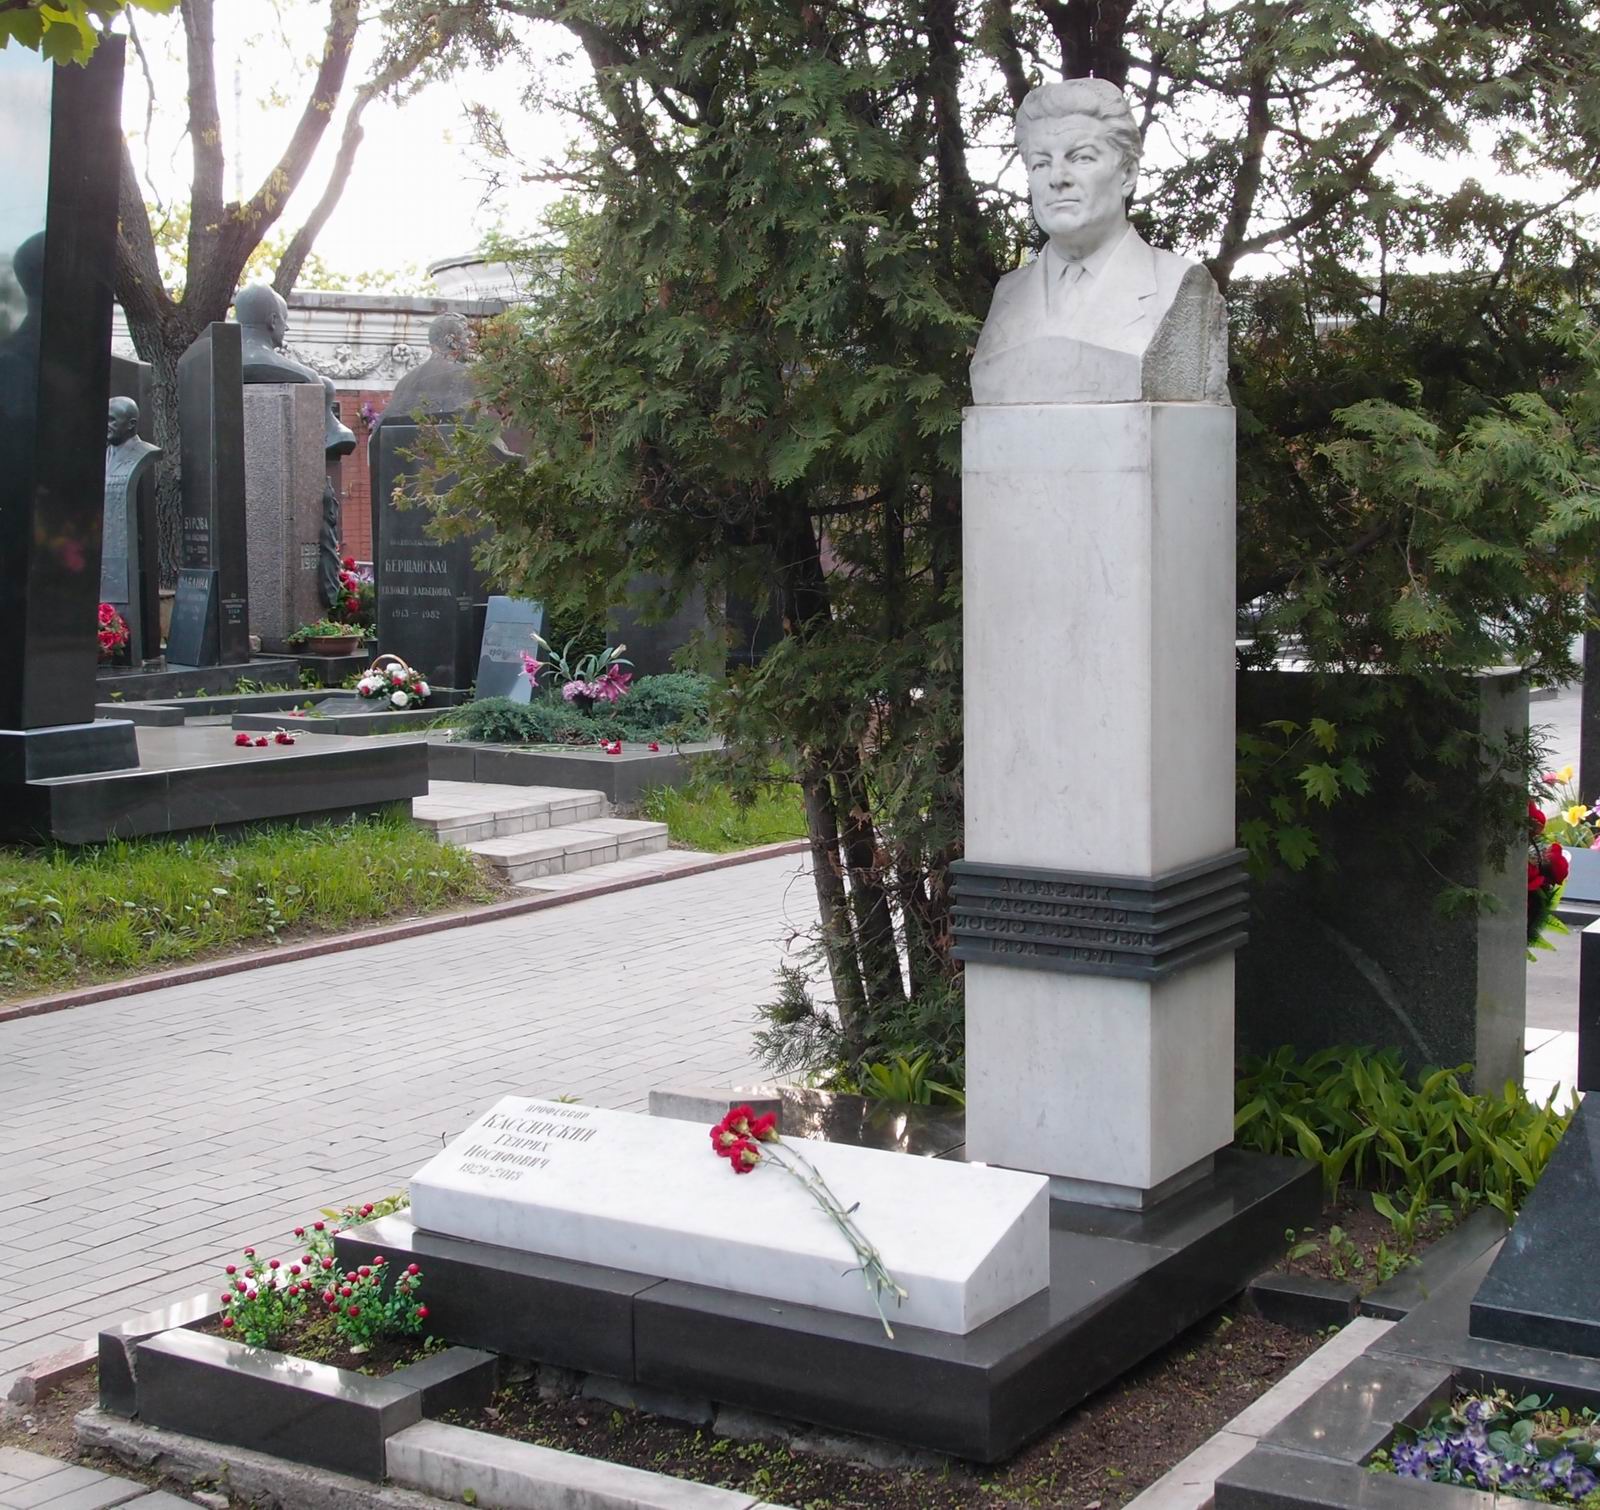 Памятник на могиле Кассирского И.А. (1898-1971), на Новодевичьем кладбище (7-15-11). Нажмите левую кнопку мыши чтобы увидеть фрагмент памятника.